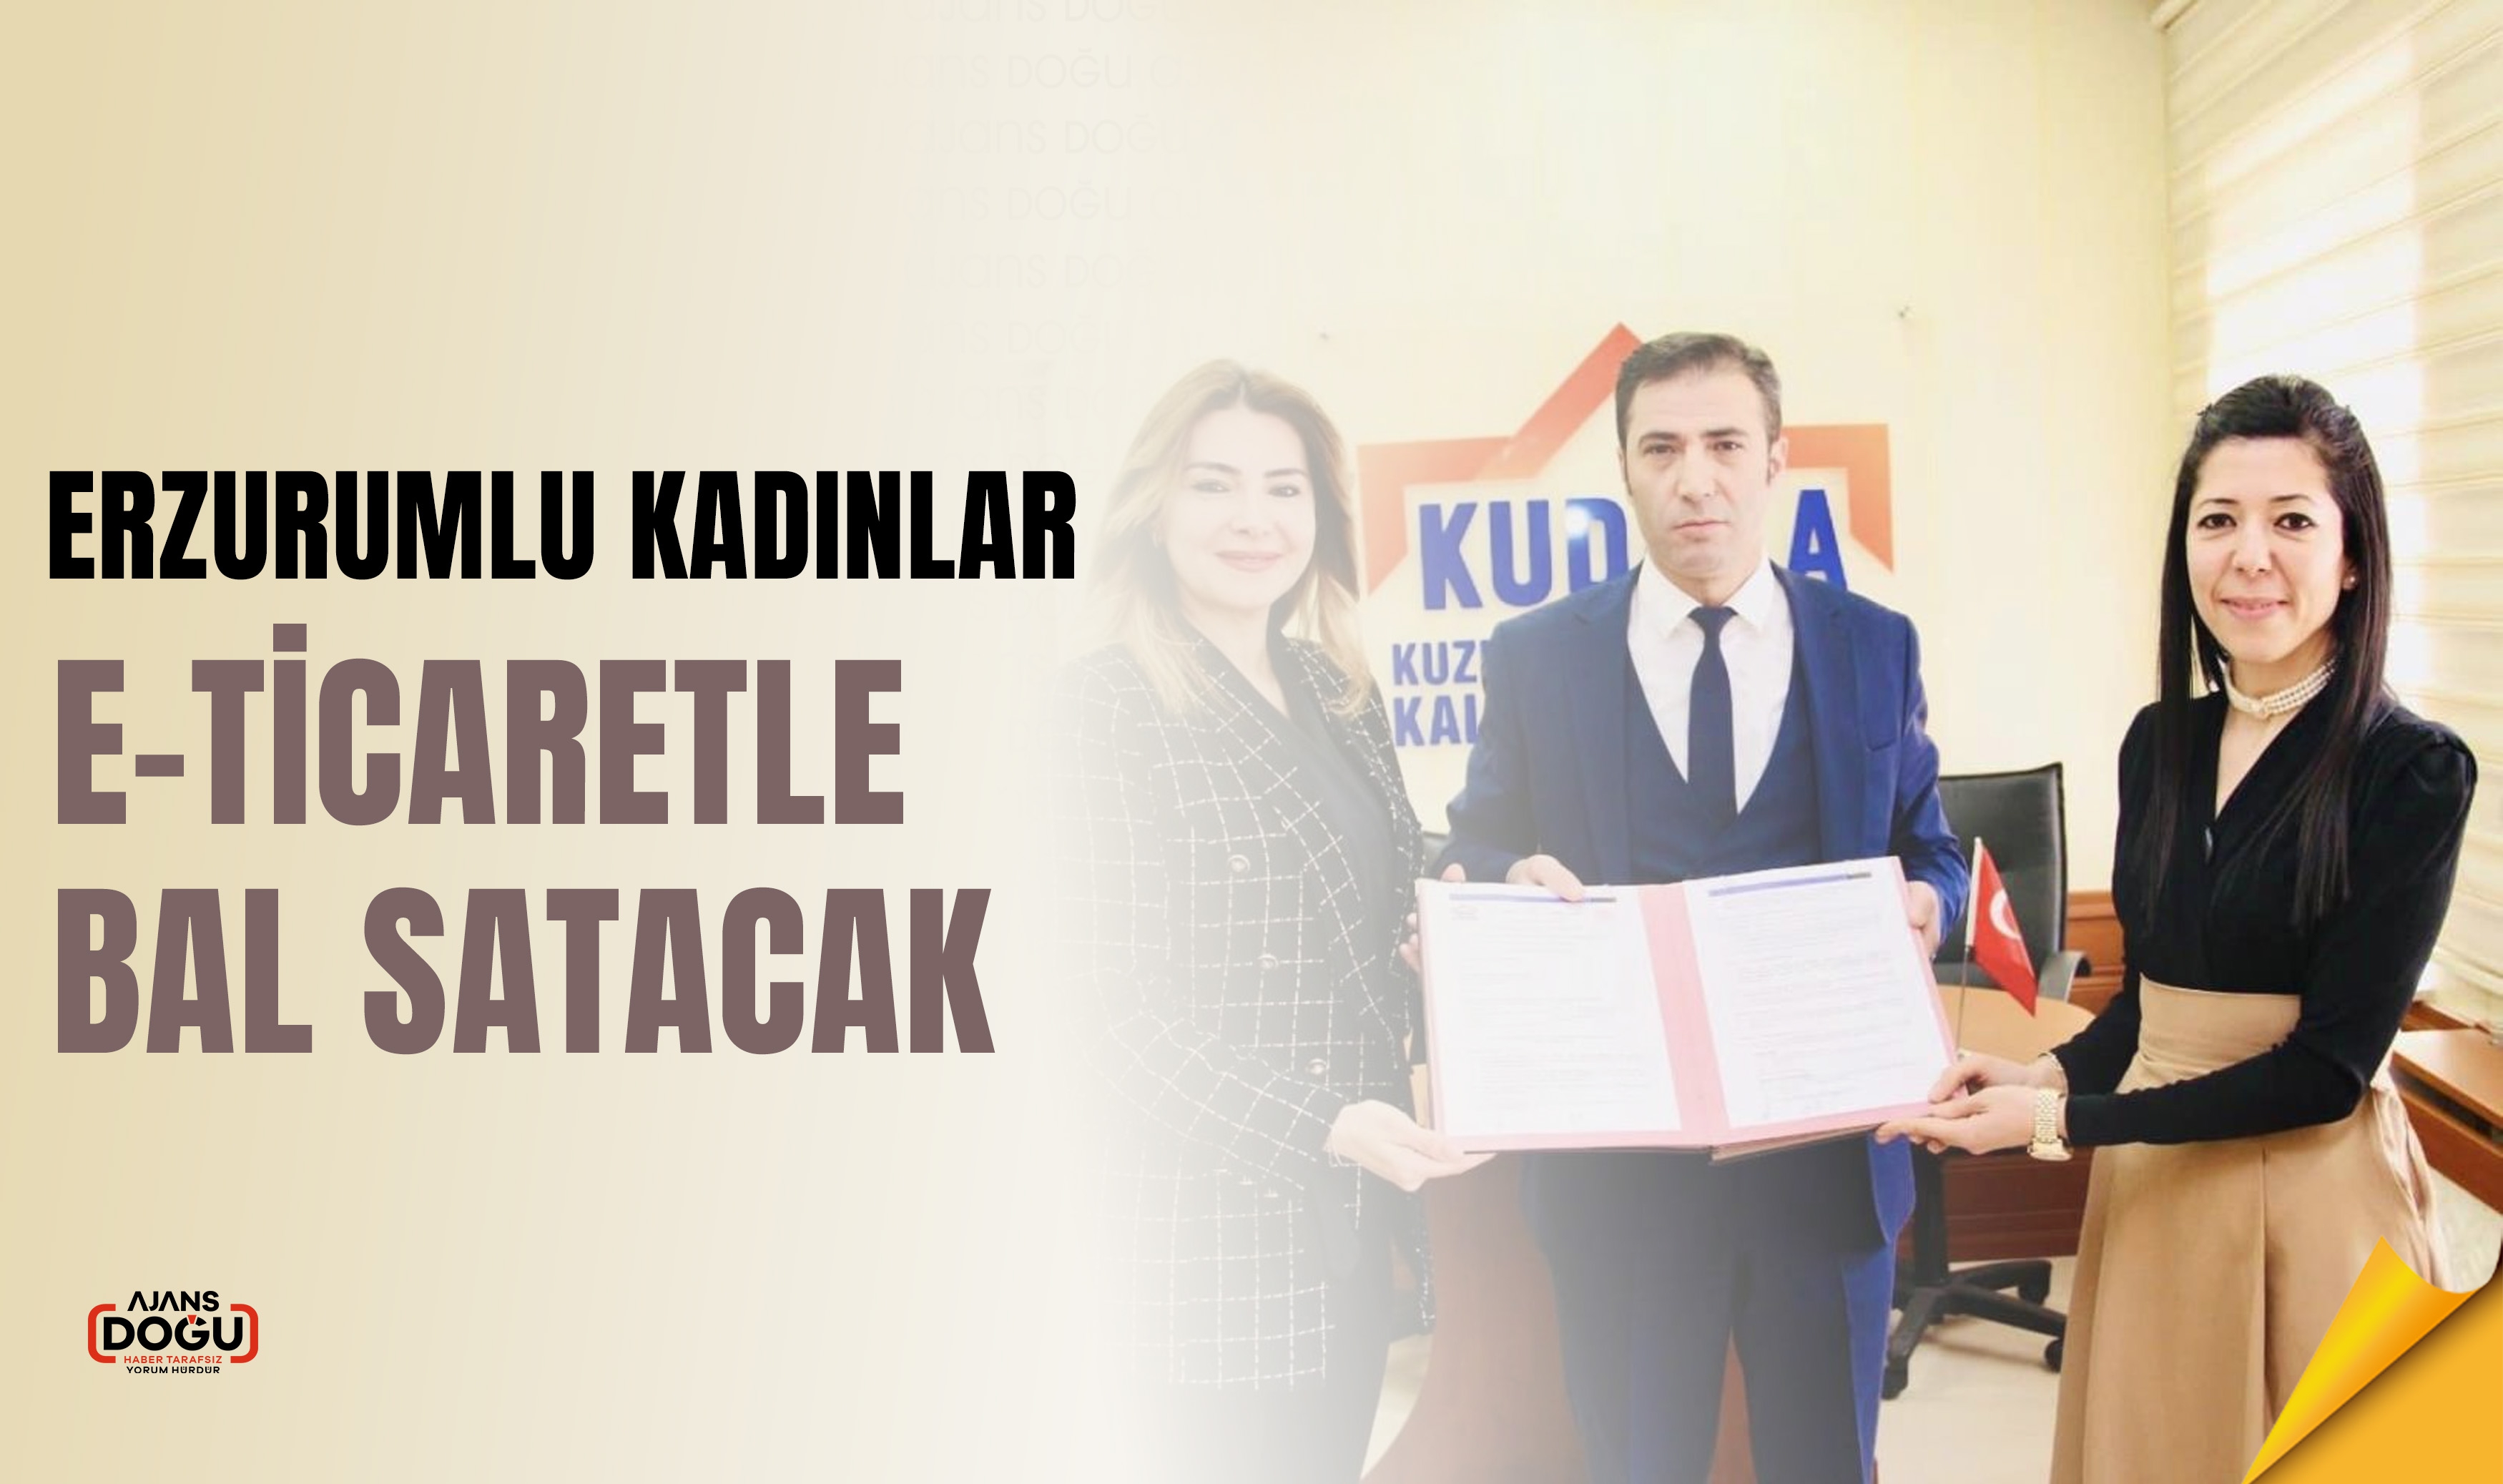 Erzurum Kadın Kooperatifi E-Ticarette Yükseliyor: Bal Satışı için Yeni Adım!